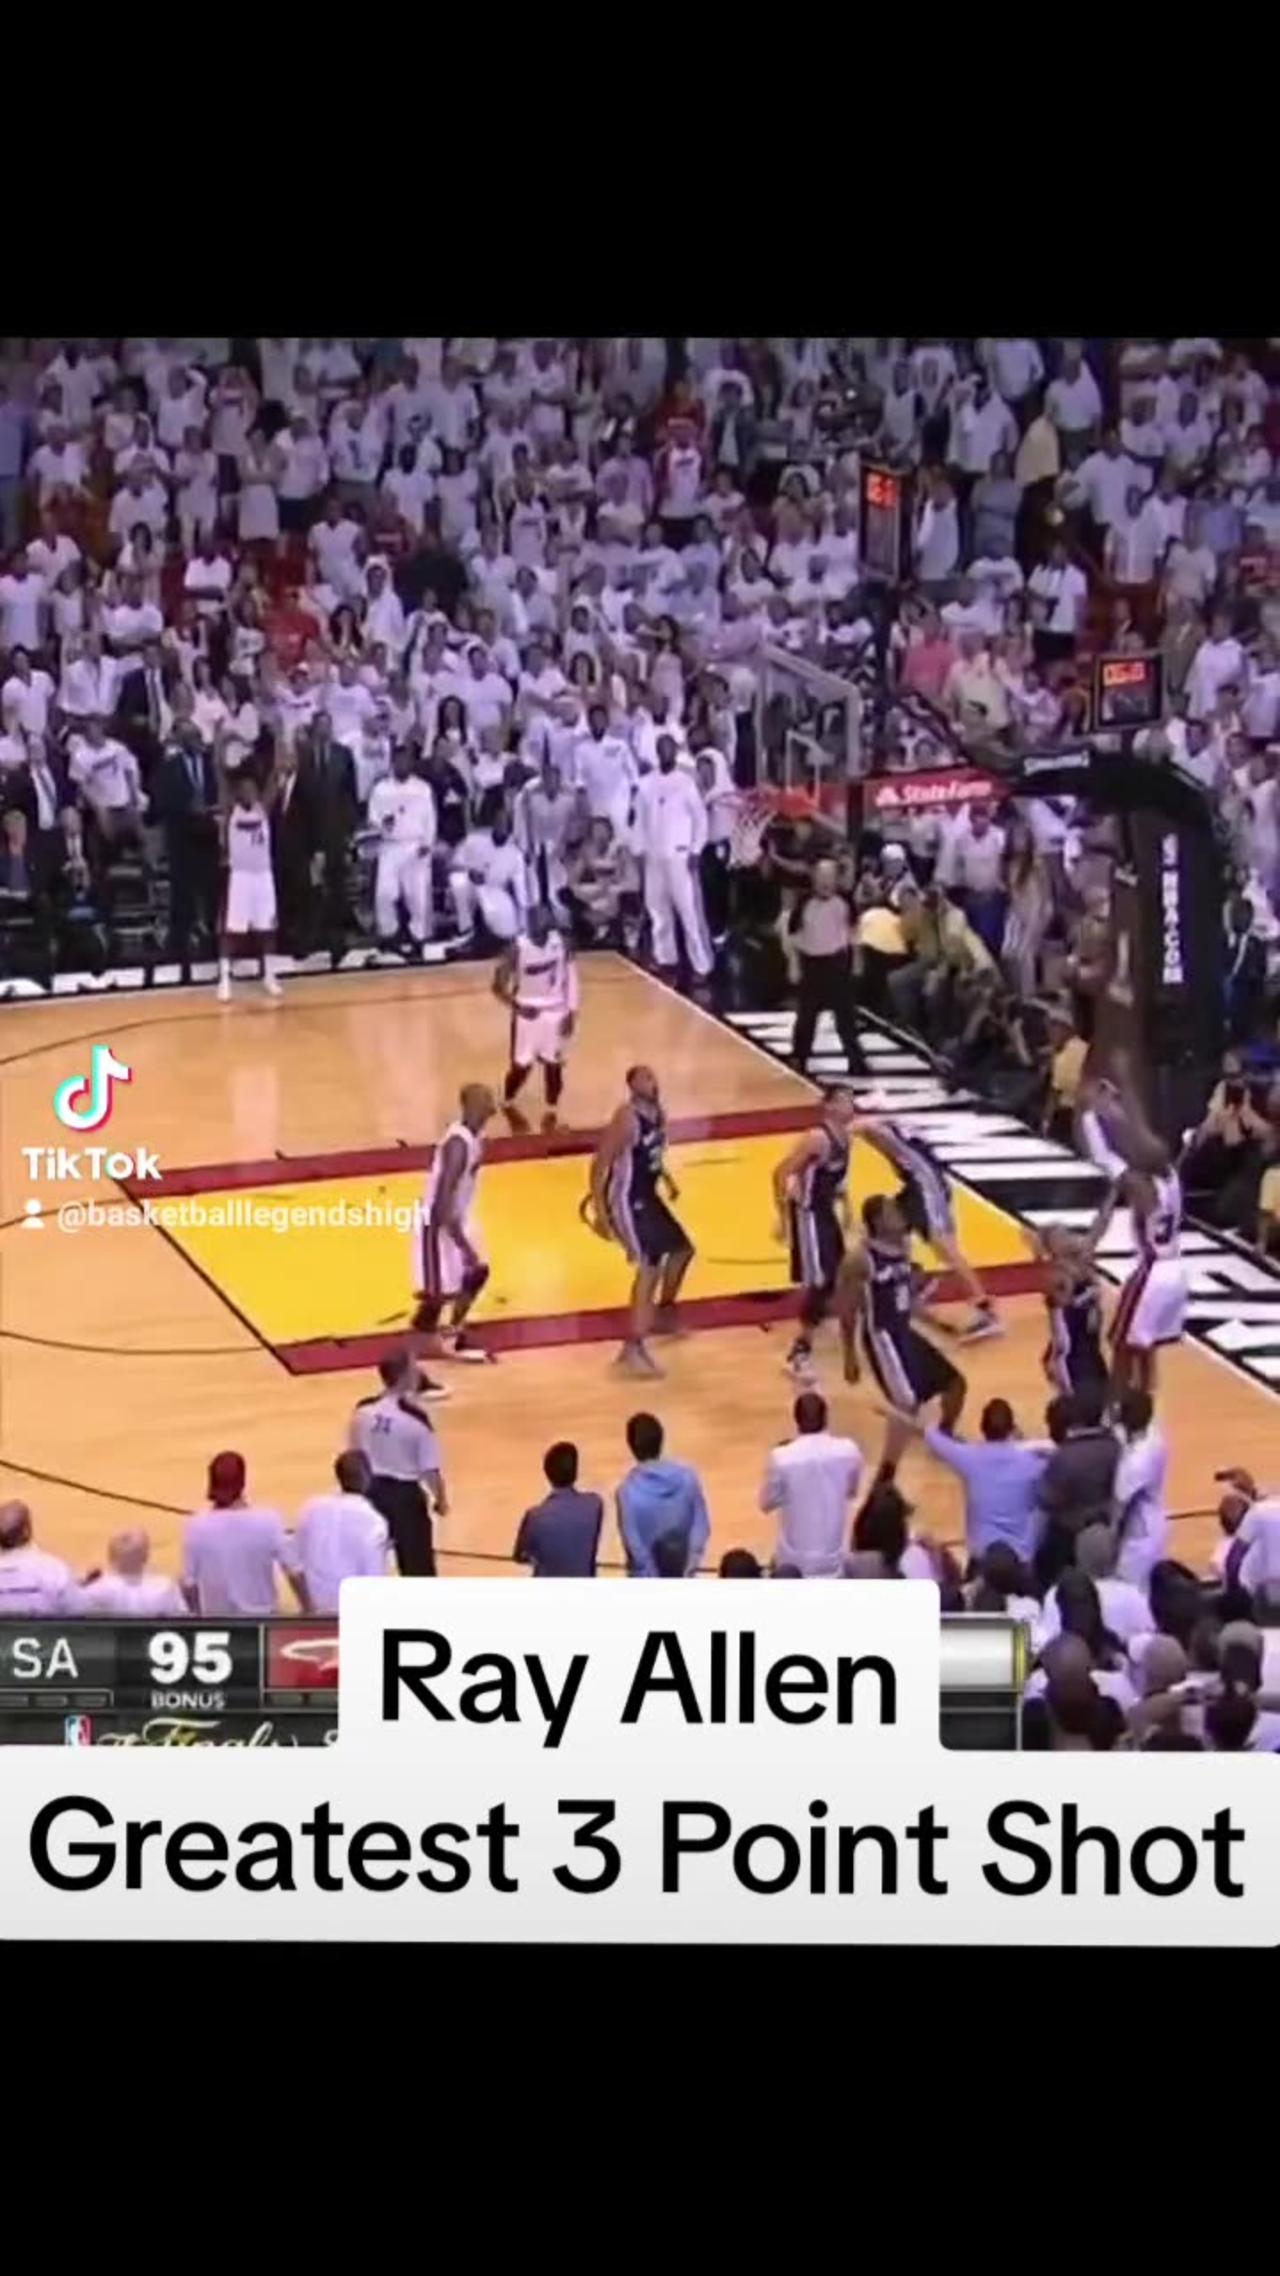 Ray Allen Grearest 3 Point Shot in the NBA Finals  #nba #basketball #nbaplayoffs #nbafinals